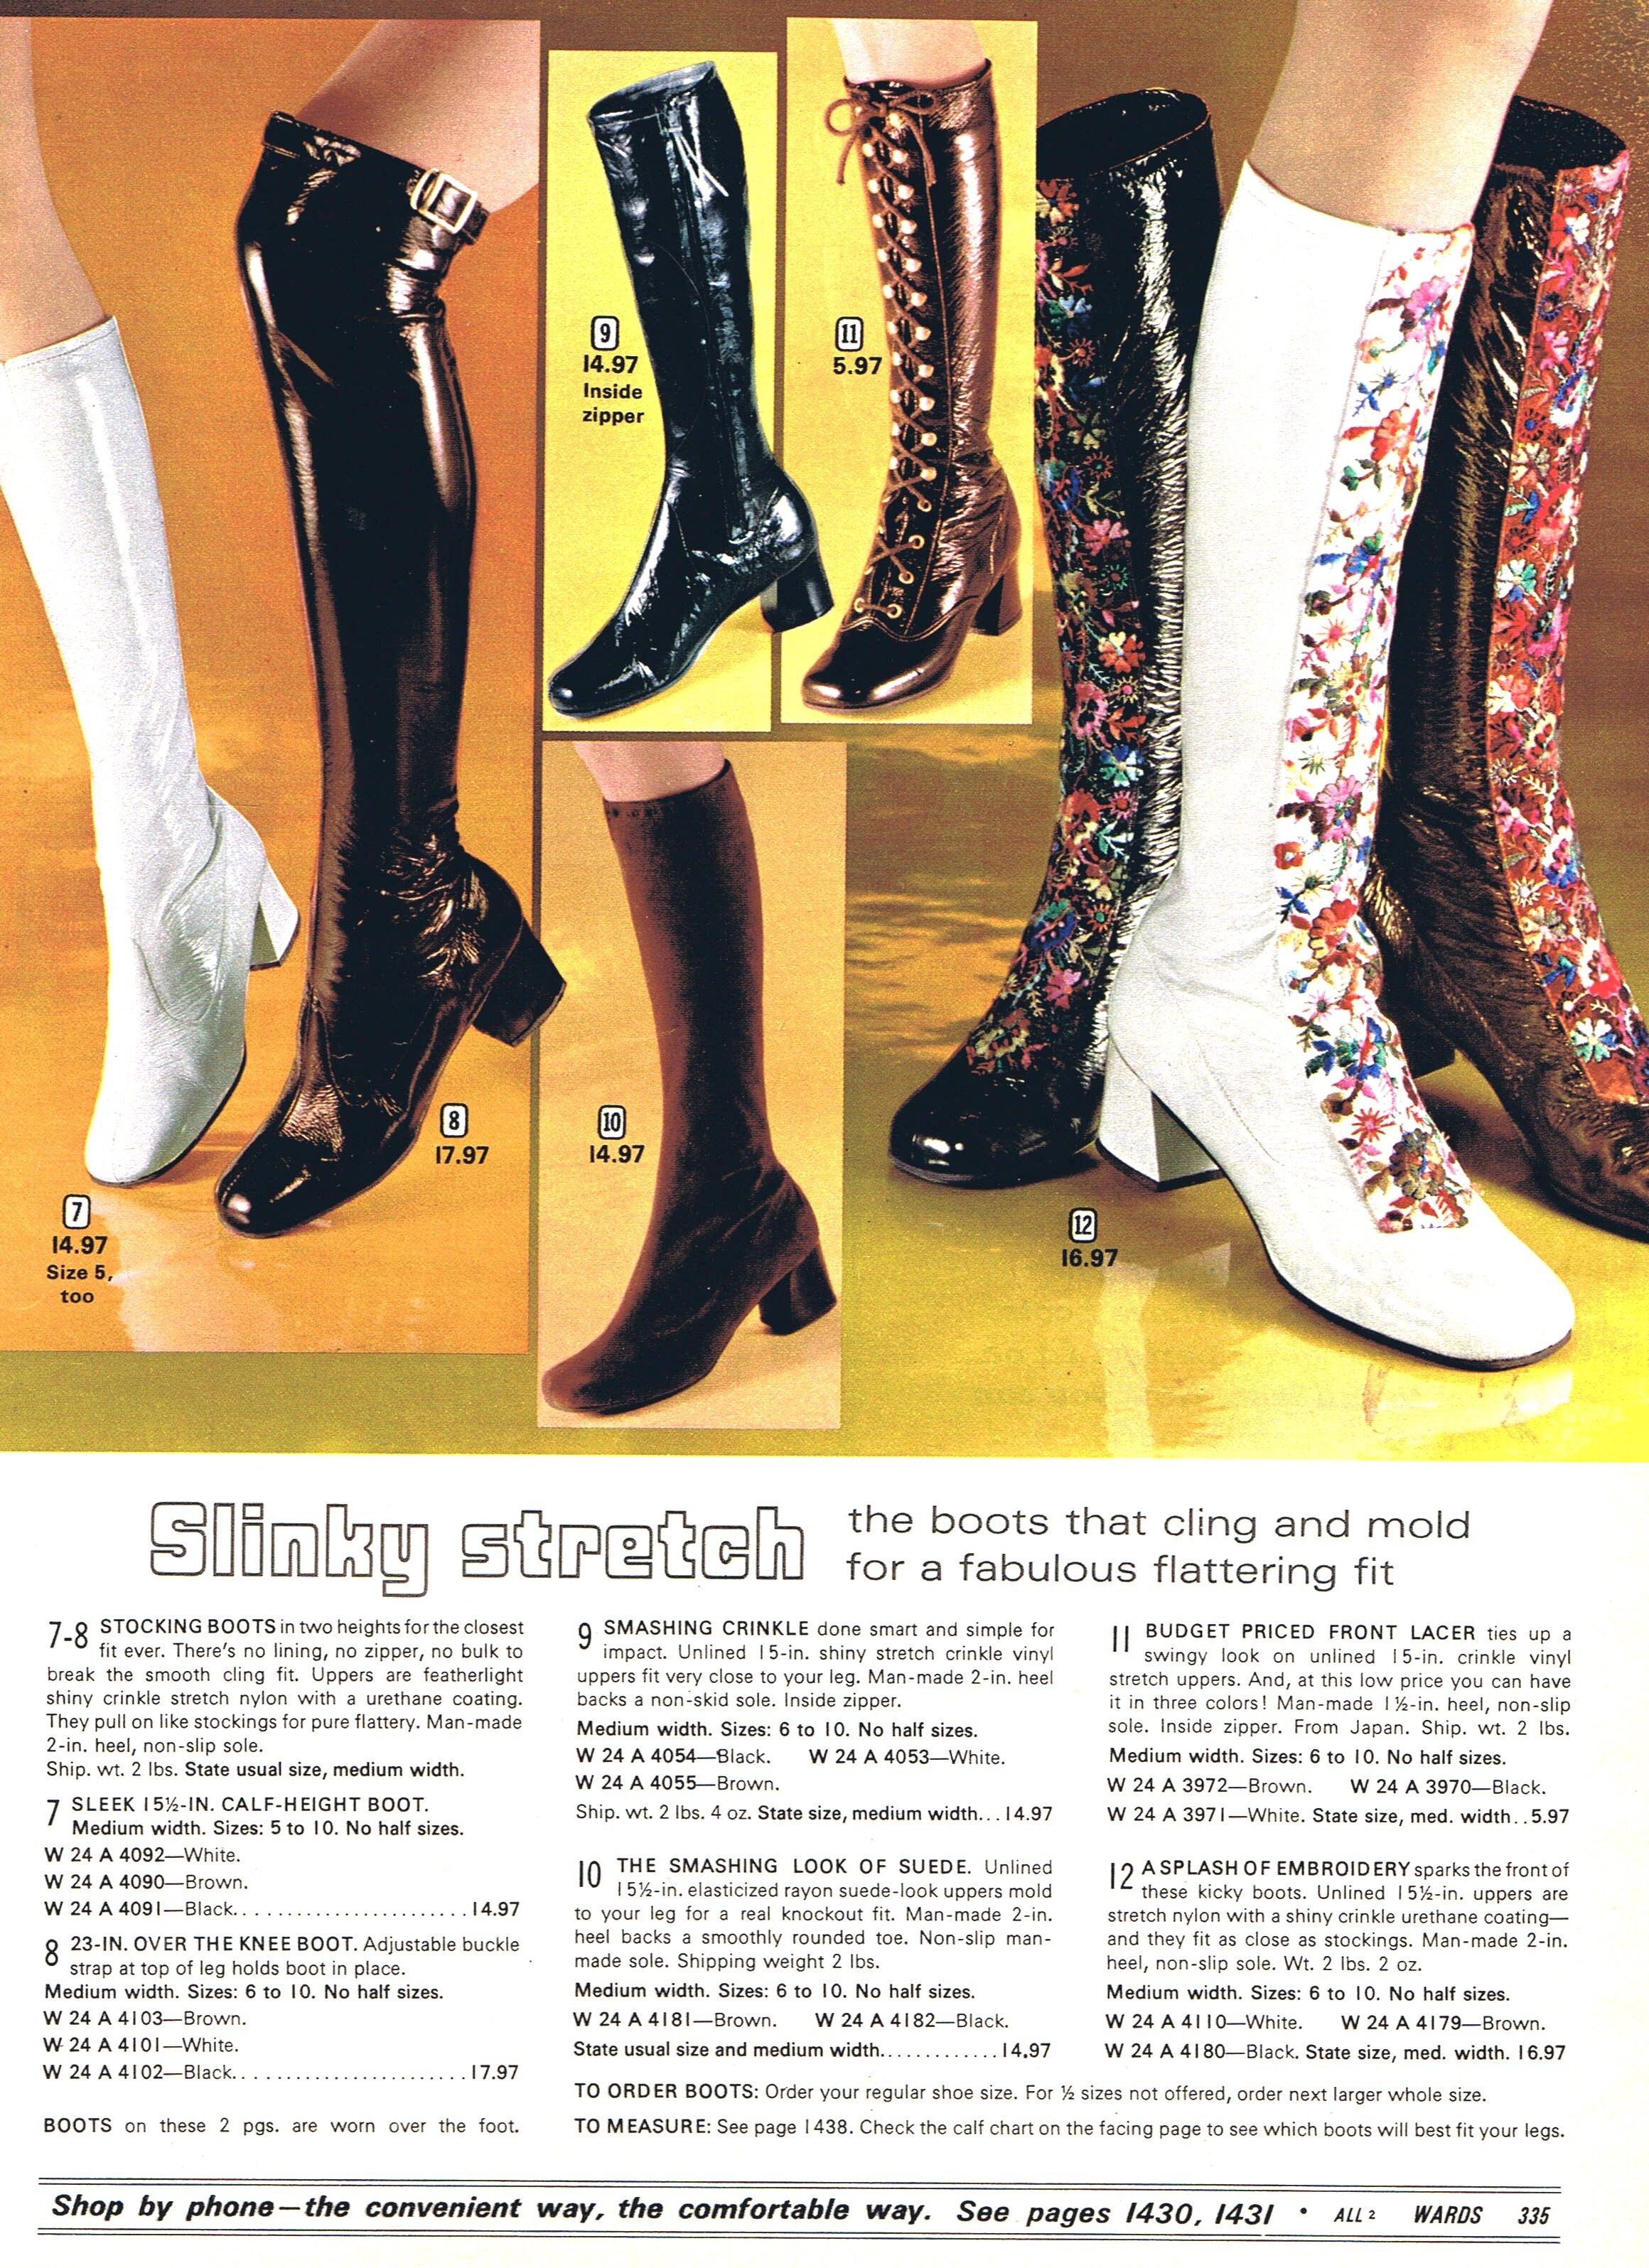 Сапоги 70 годов. 60-Е сапоги гоу-гоу. Go go Boots мода 60-х. Сапоги чулки типа go-go Boots 1970-е. Сапоги в стиле 70-х.